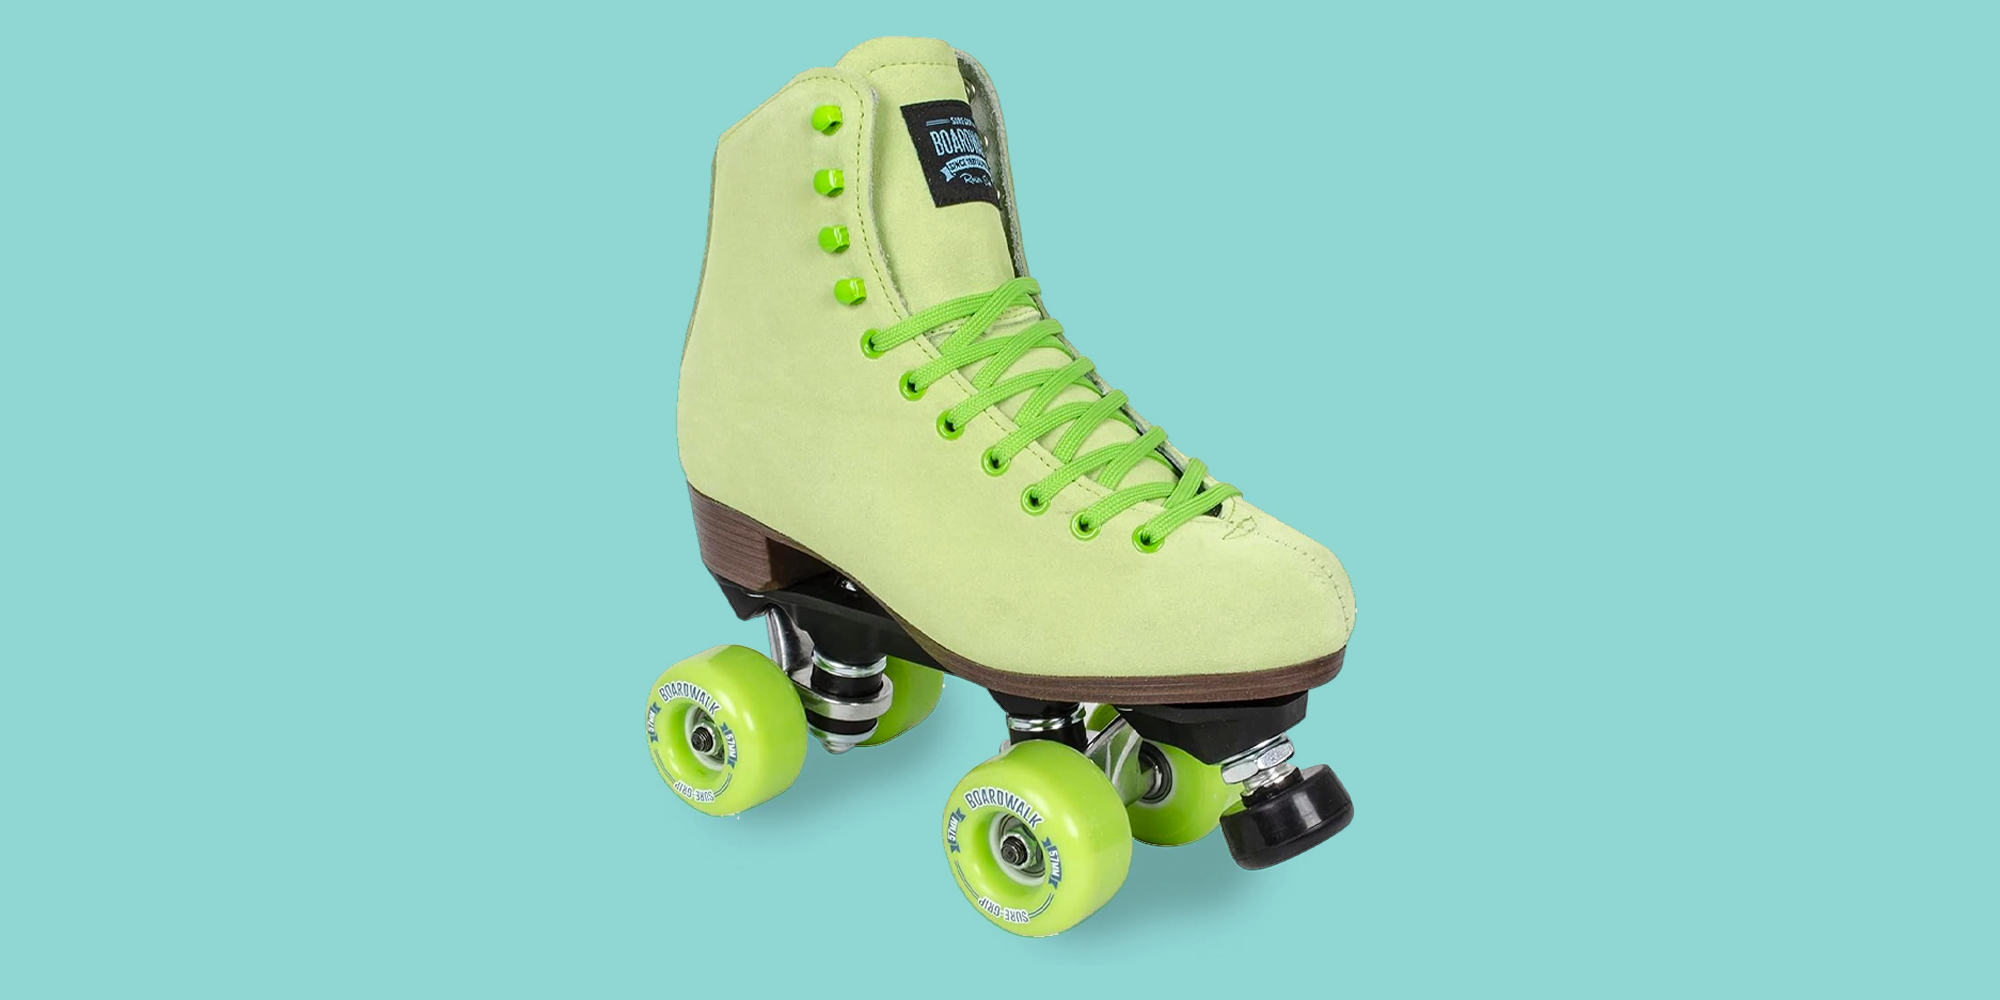 Vintage Roller Skates – Sure-Grip Skate Plates and Wheels – Hard